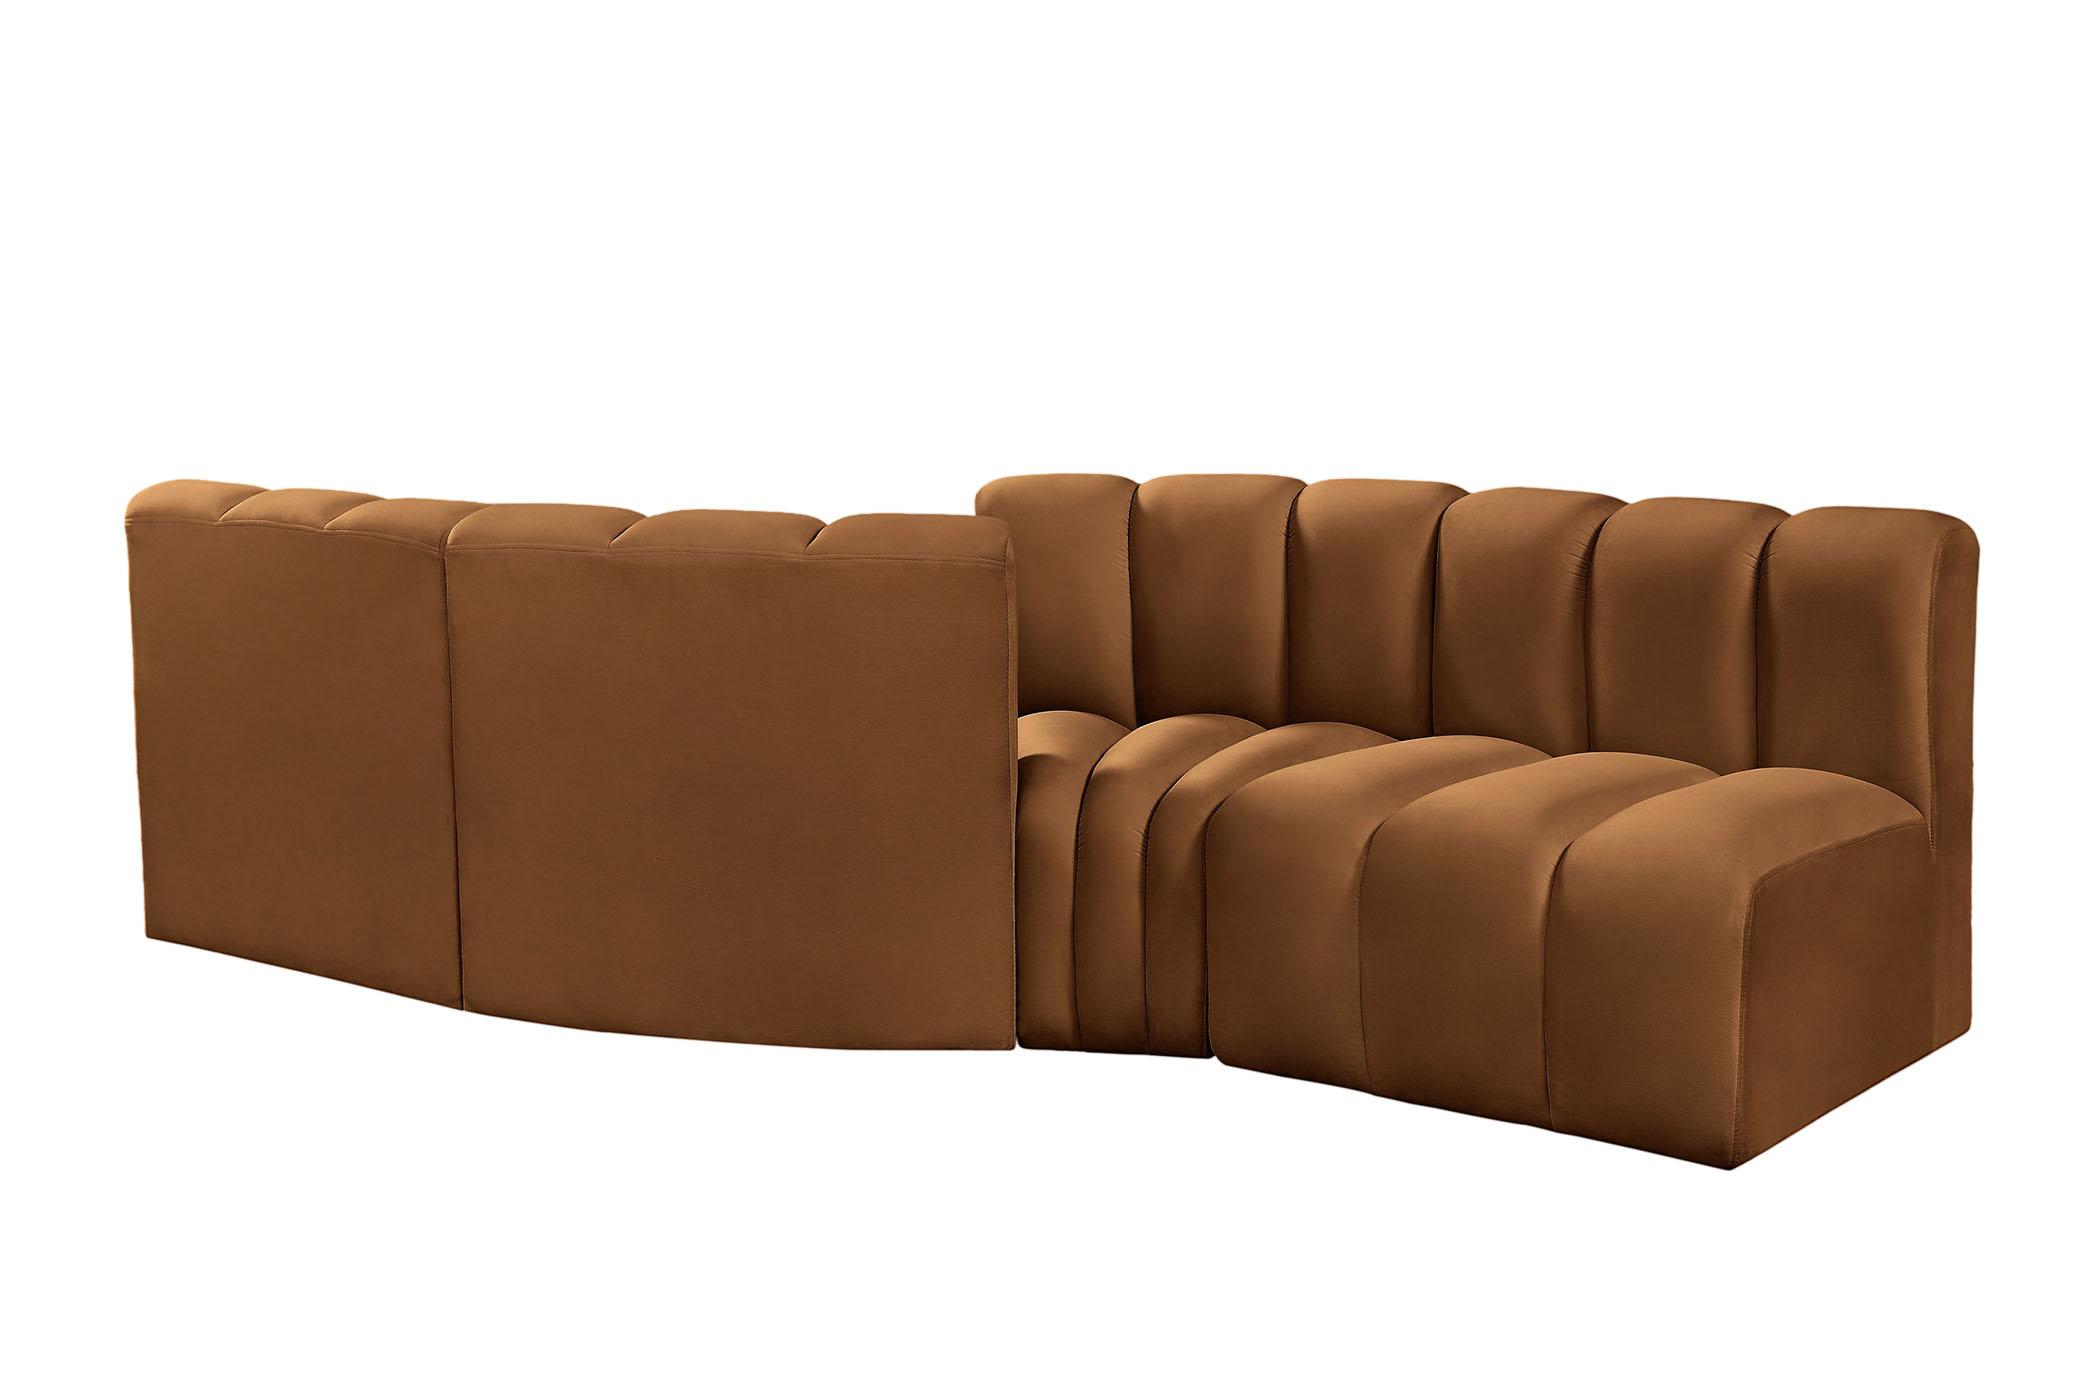 

    
103Saddle-S4A Meridian Furniture Modular Sectional Sofa
